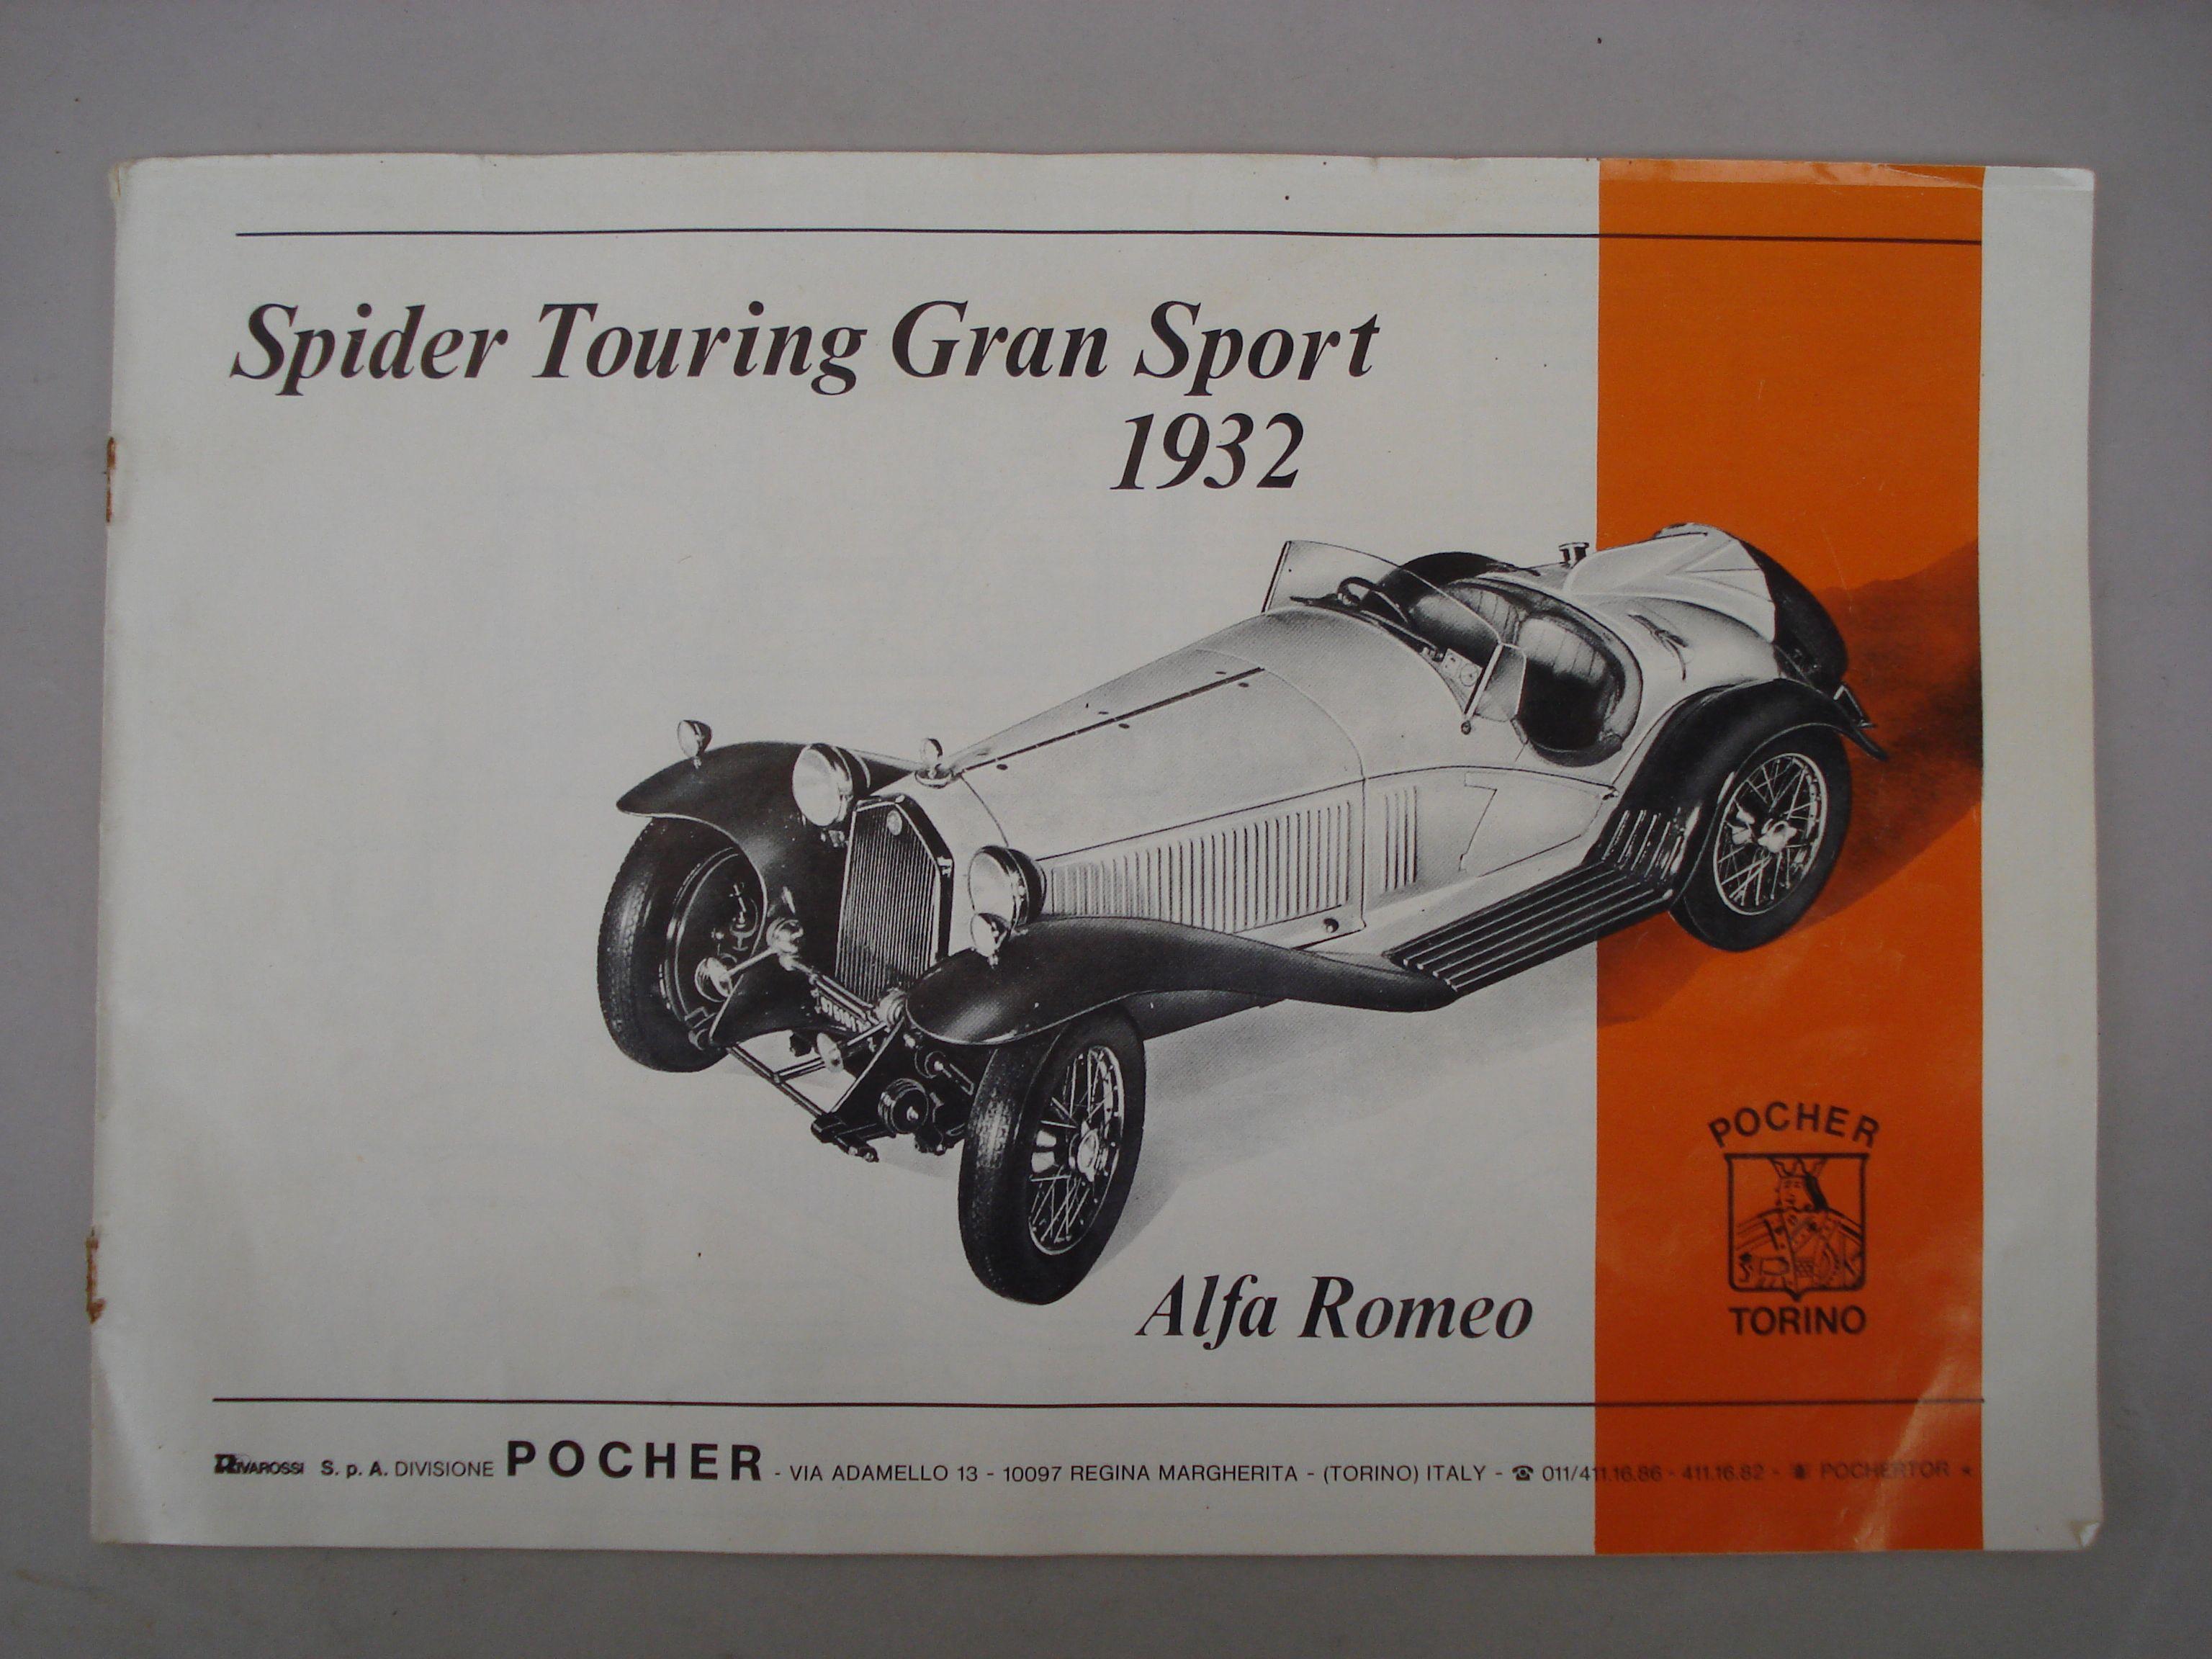 Pocher 1:8 Teile Alfa Romeo Spider Touring Gran Sport 1932 K73 262 J10 